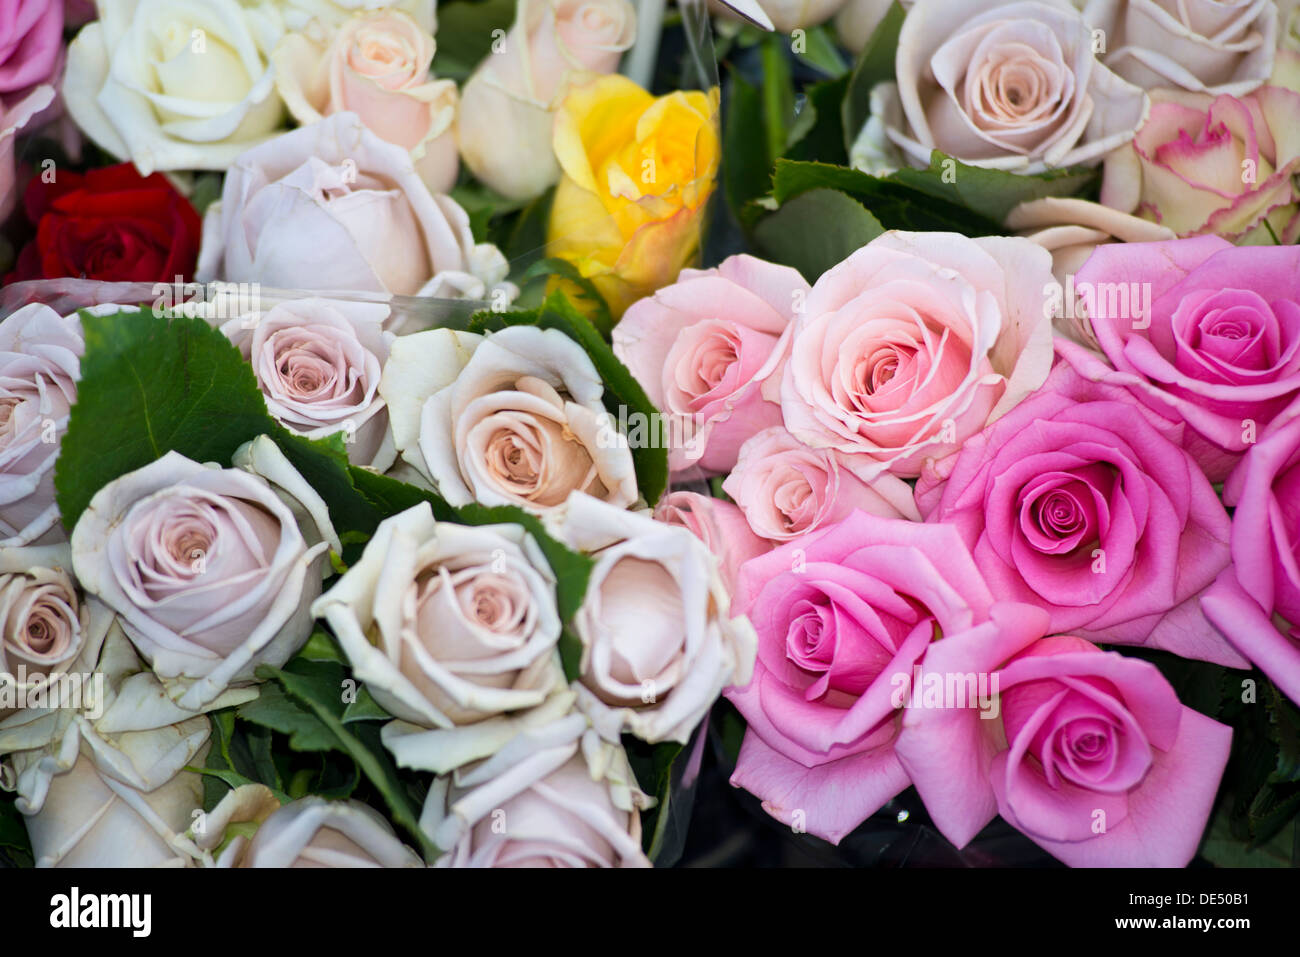 Roses (Rosa) Stock Photo